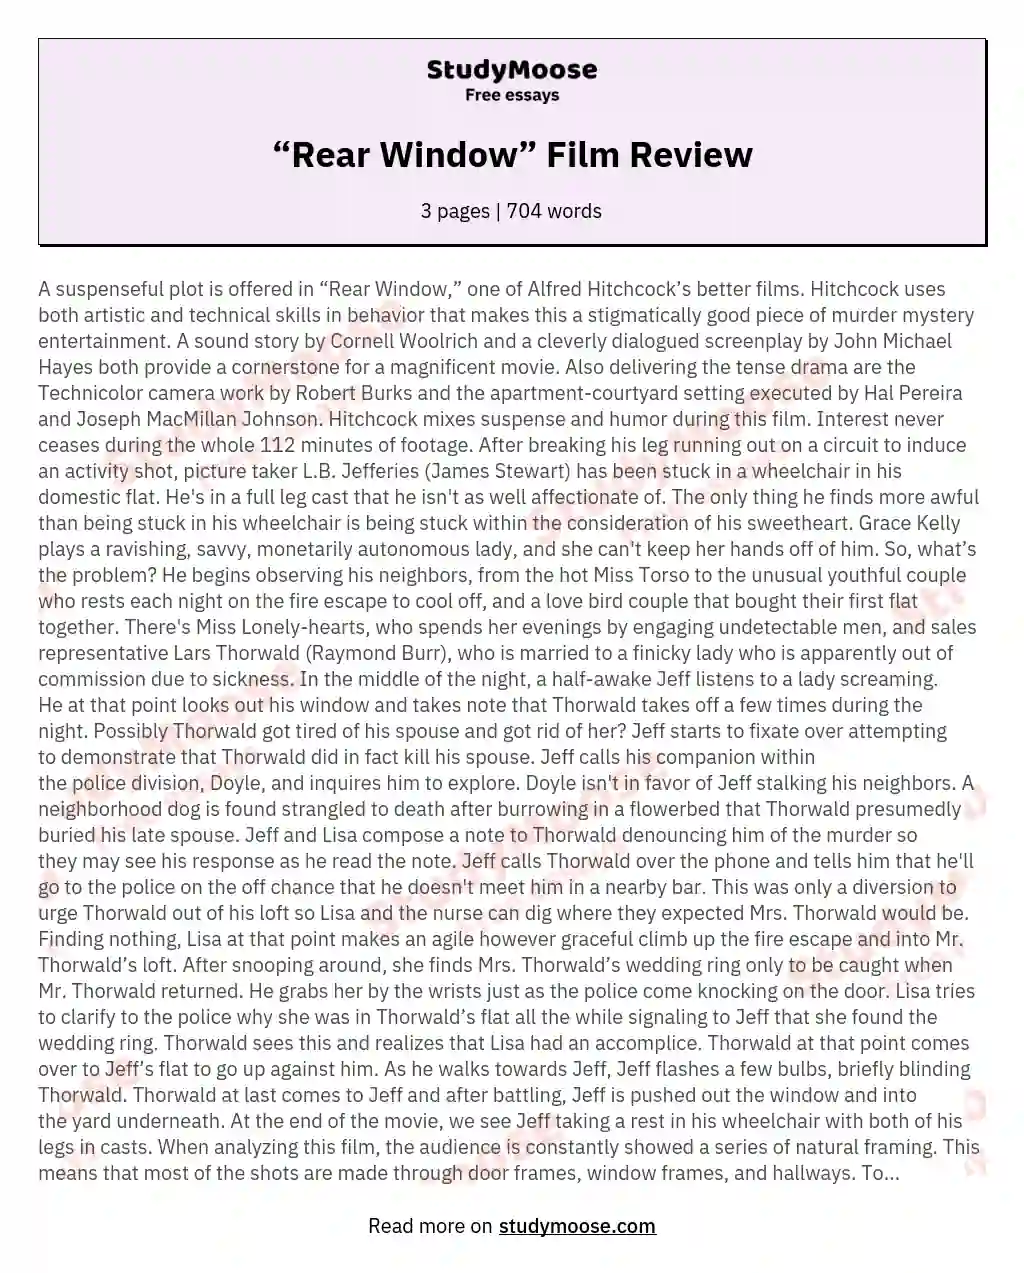 “Rear Window” Film Review essay